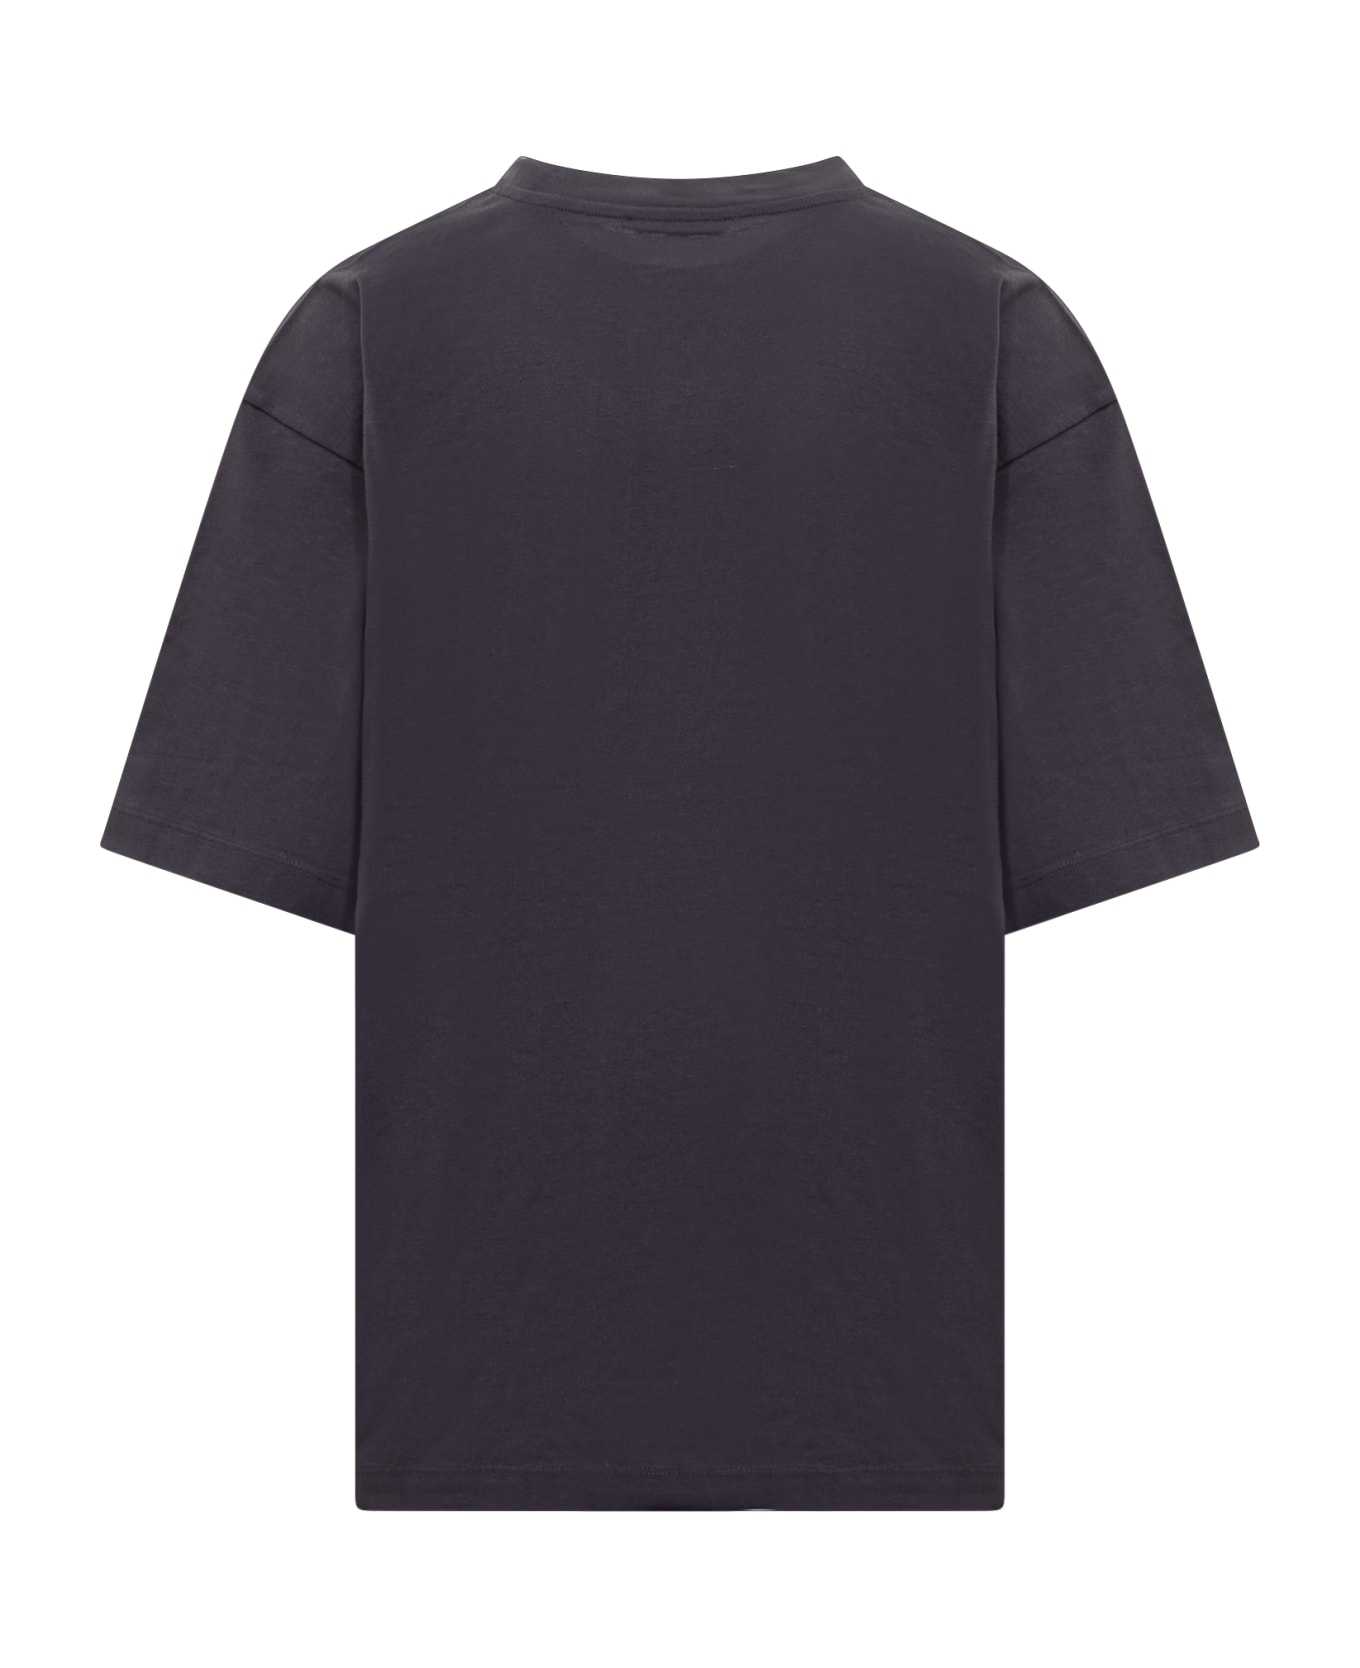 Marni T-shirt - BLU BLACK